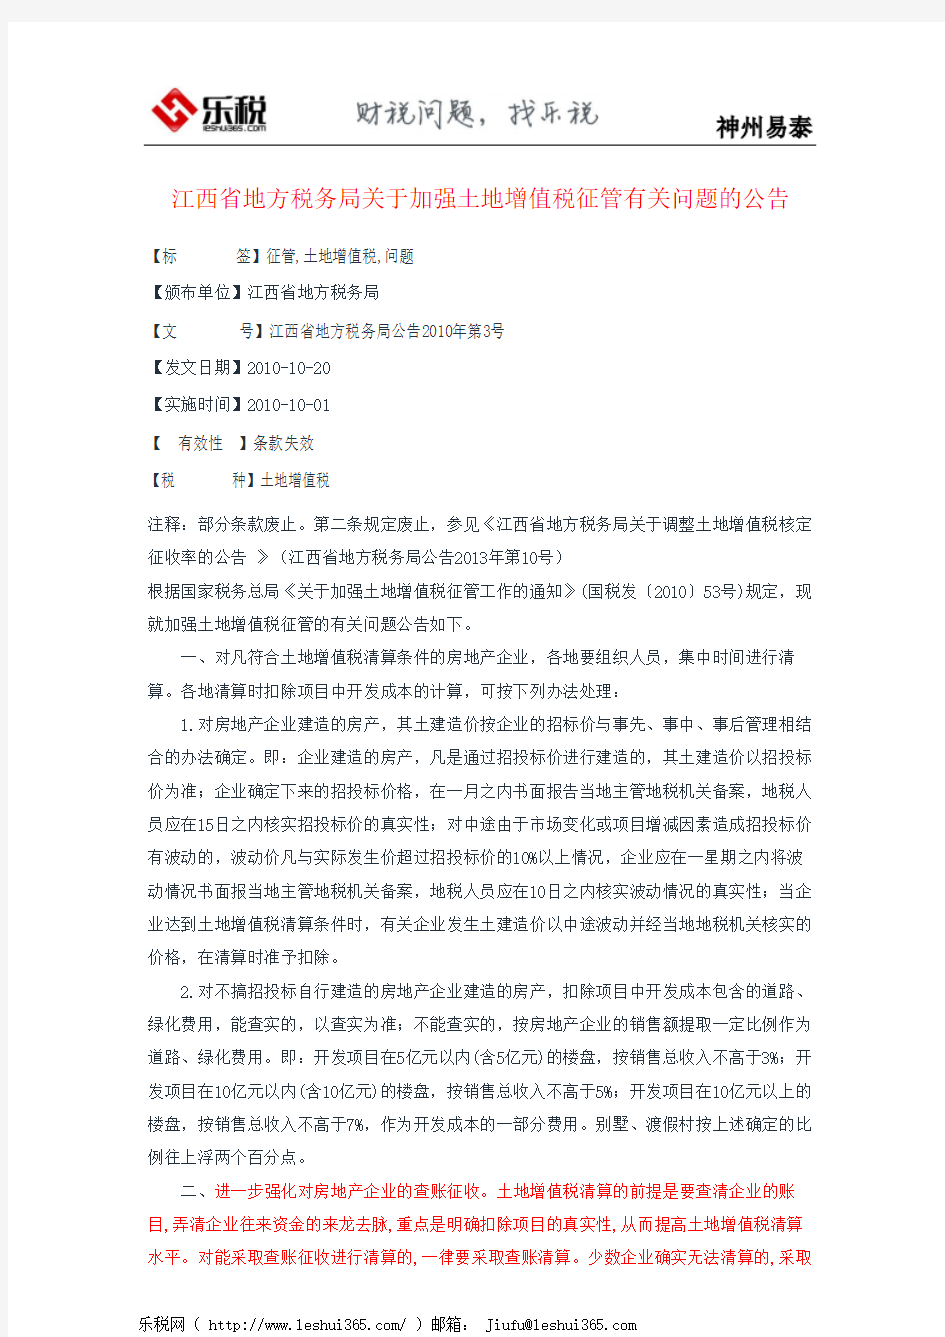 江西省地方税务局关于加强土地增值税征管有关问题的公告